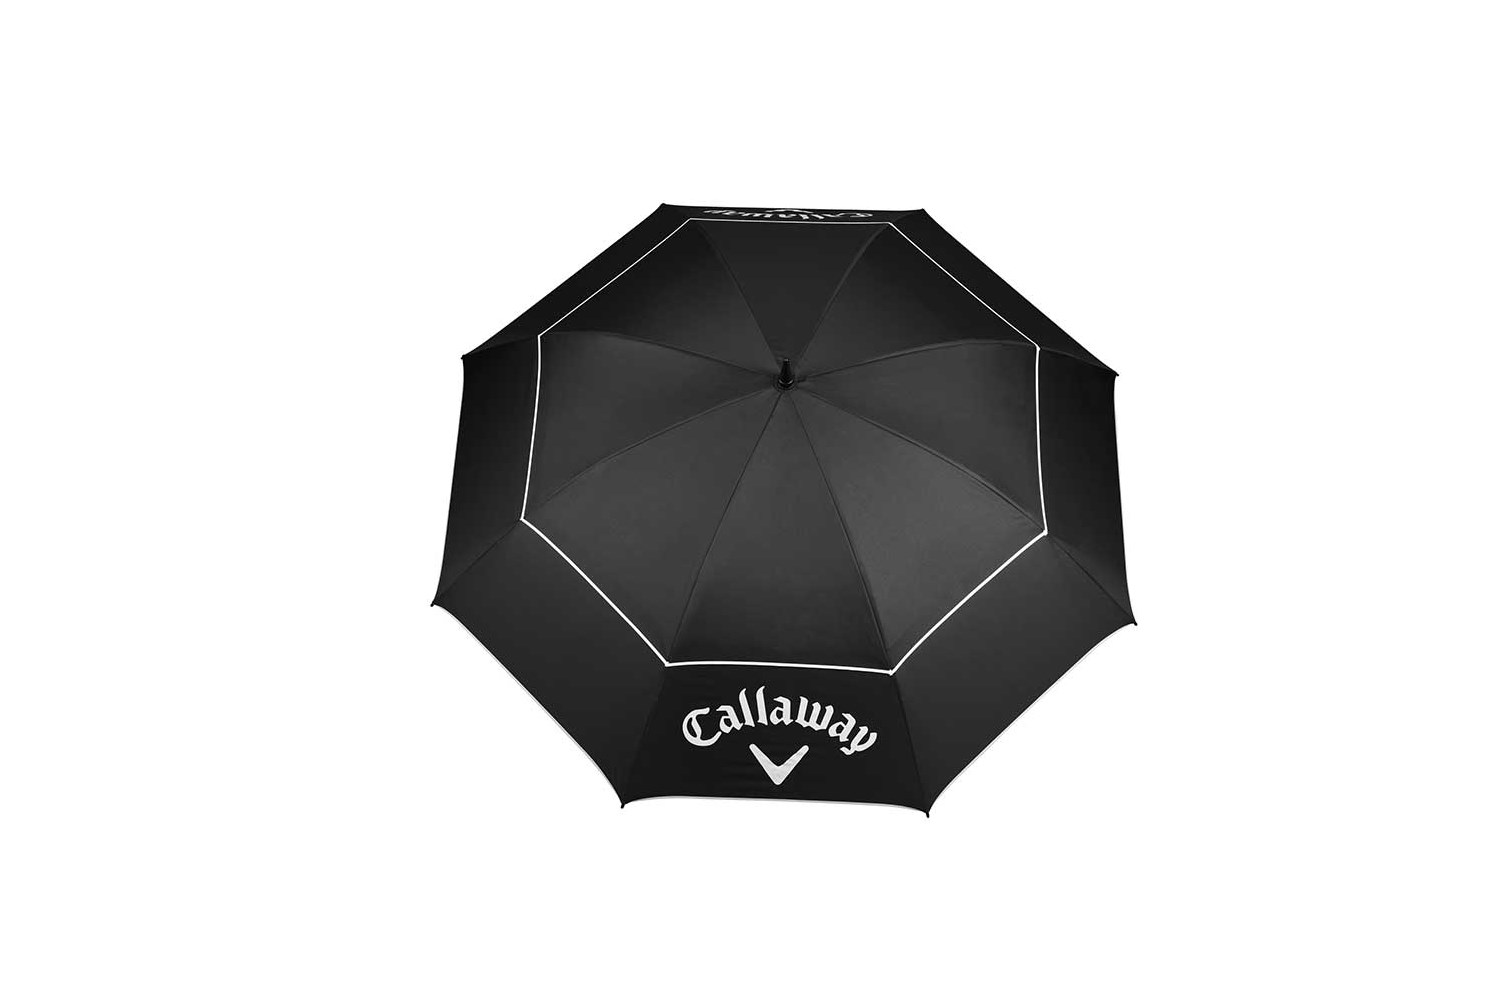 Callaway Shield golfový deštník 64" BLACK/WHITE  - zvìtšit obrázek